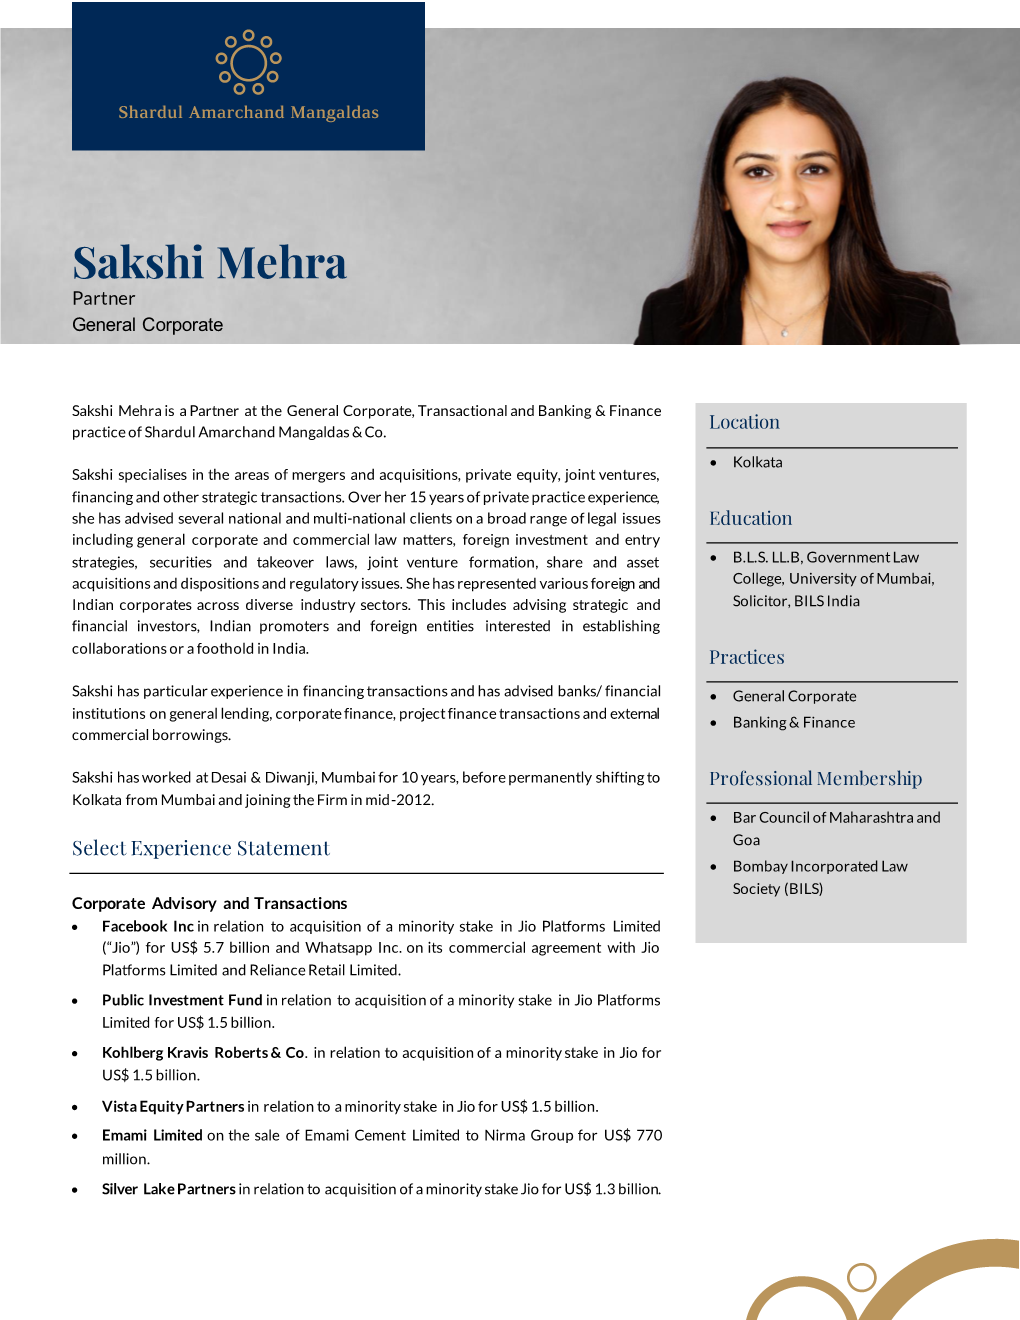 Sakshi Mehra Partner General Corporate